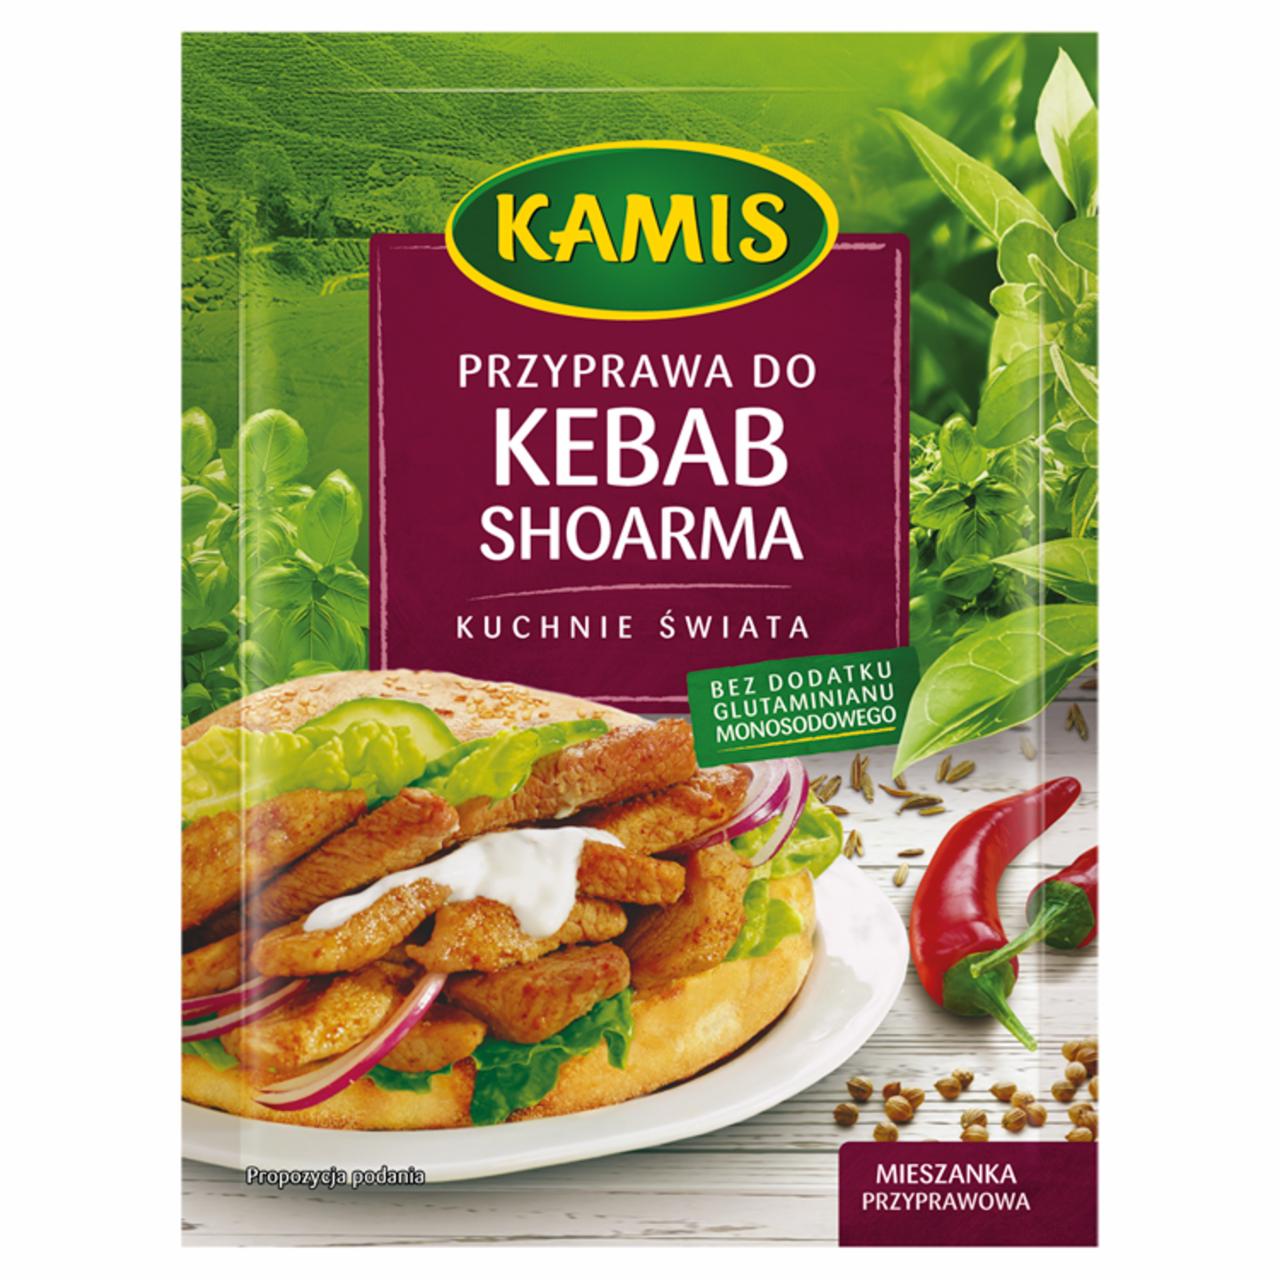 Zdjęcia - Kamis Kuchnie świata Przyprawa do kebab shoarma Mieszanka przyprawowa 25 g